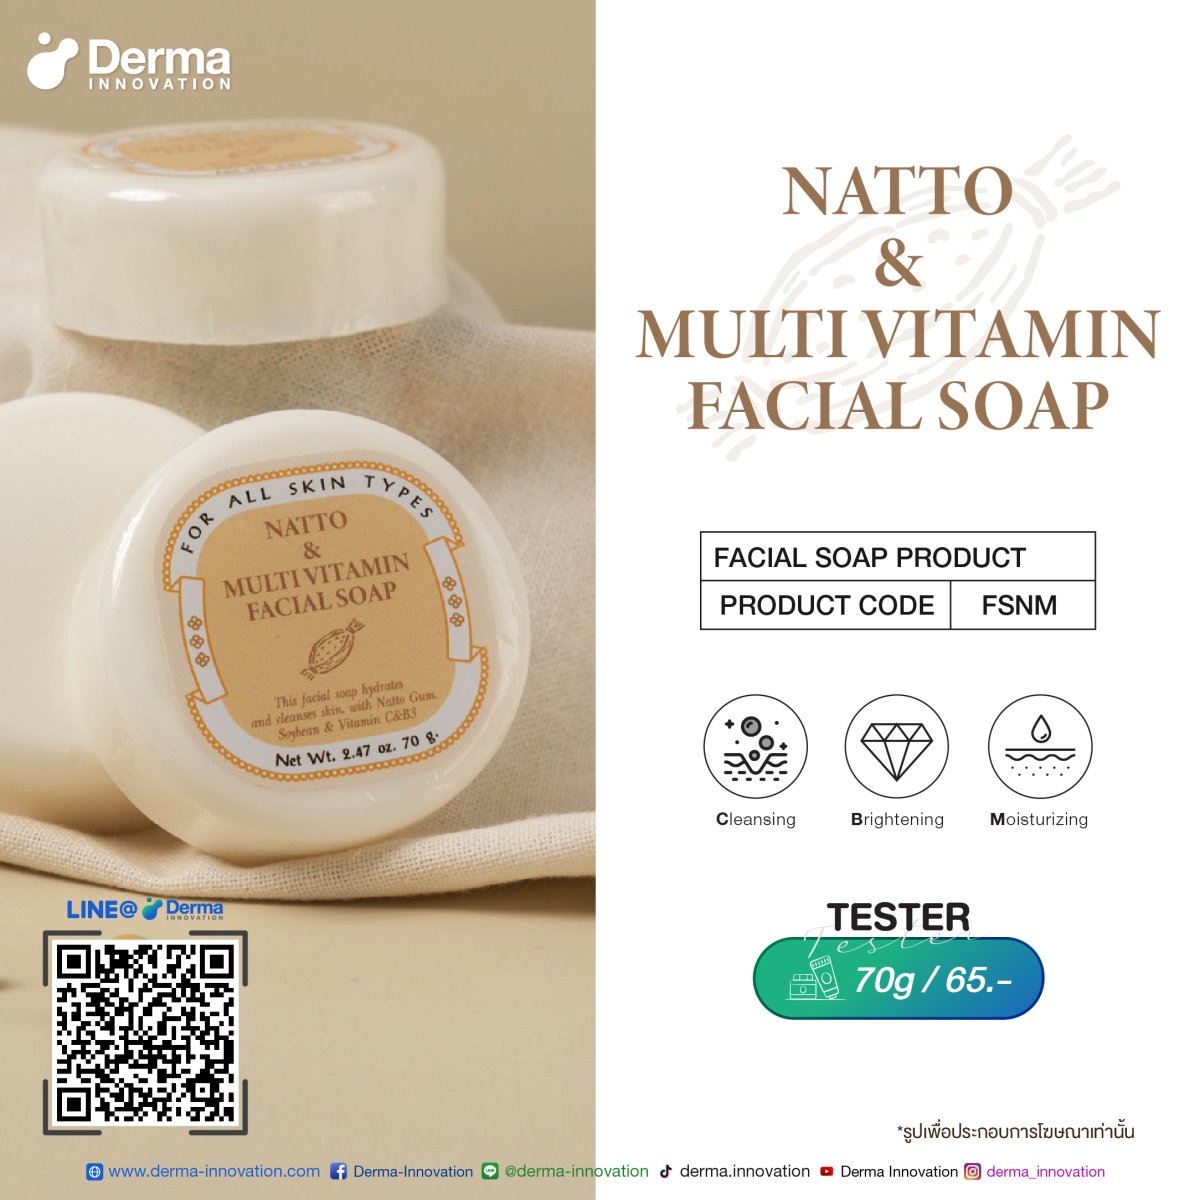 Natto And Multi Vitamin Facial Soap Derma Innovation